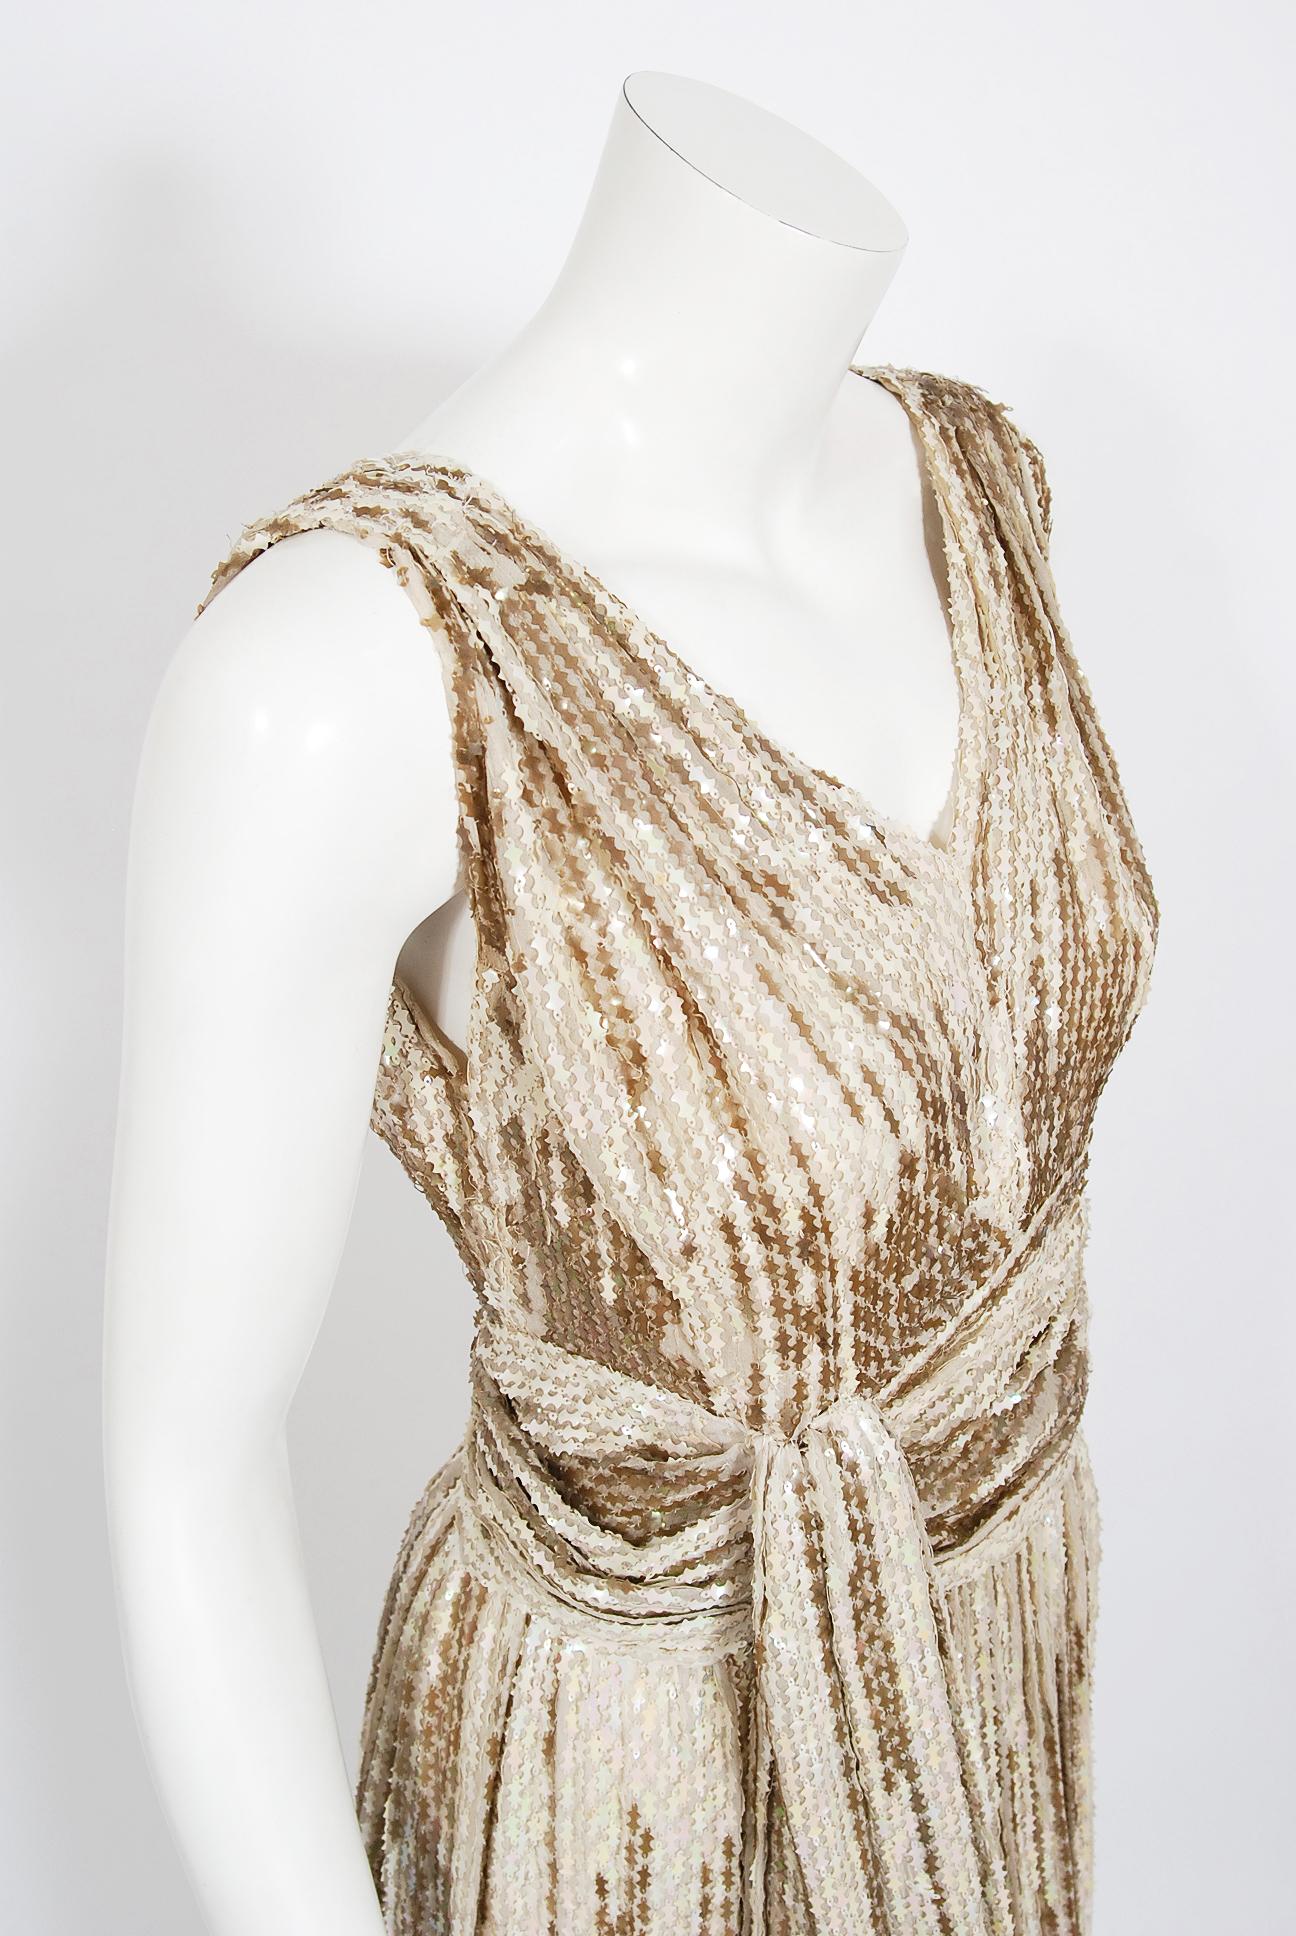 Or Robe drapée de haute couture française des années 1940, ivoire irisée, ornée de sequins en vente